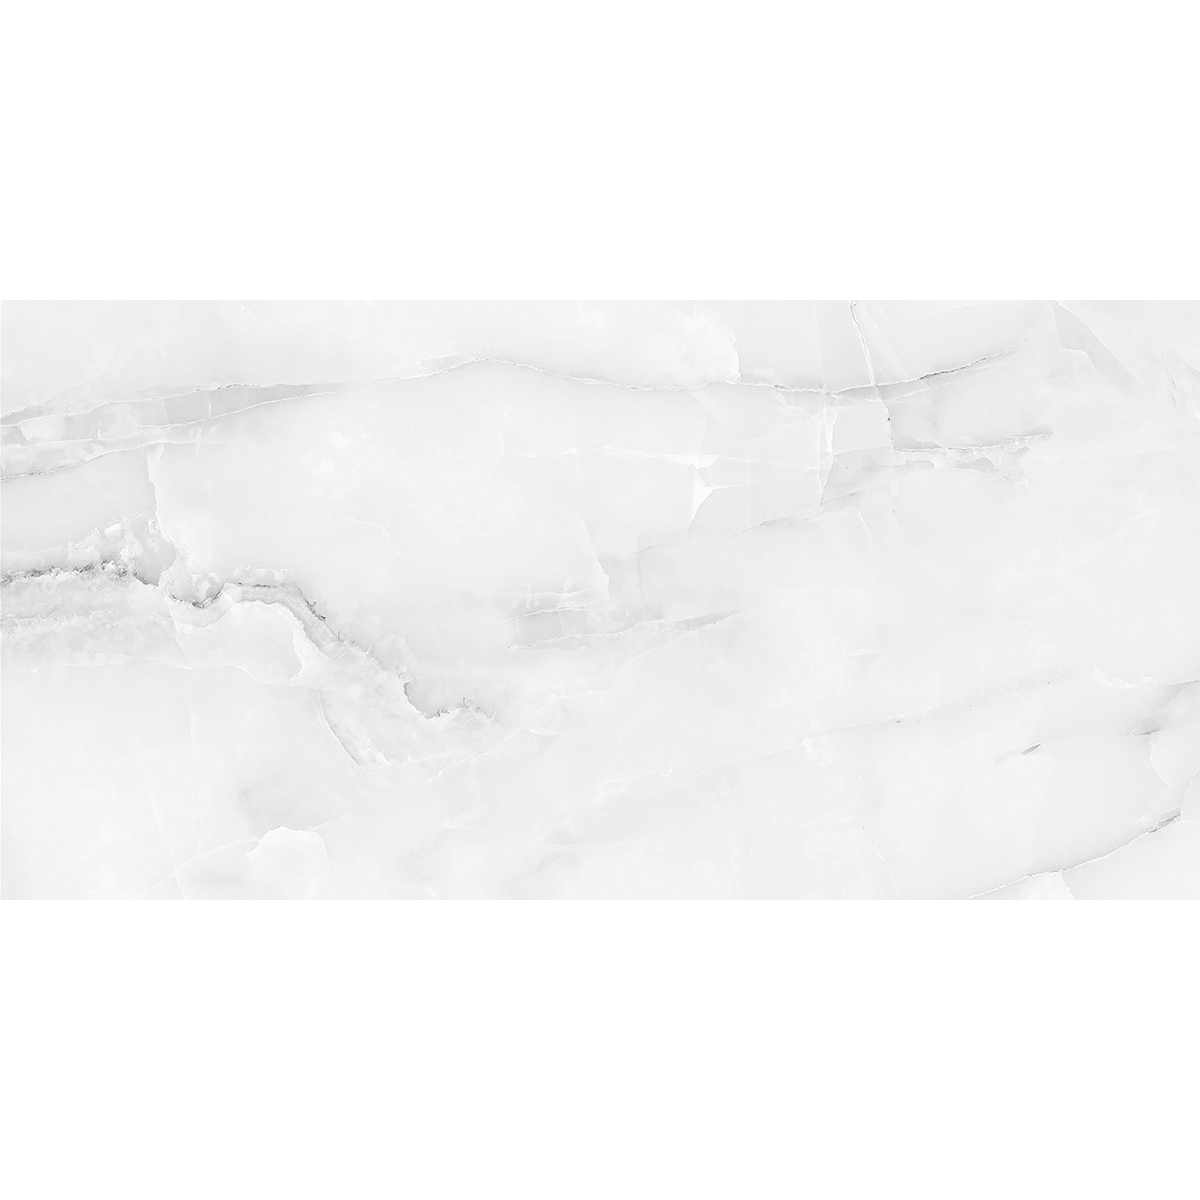 Керамогранит Absolut Gres Snow Onix Grey AB 1182G 120x60 см